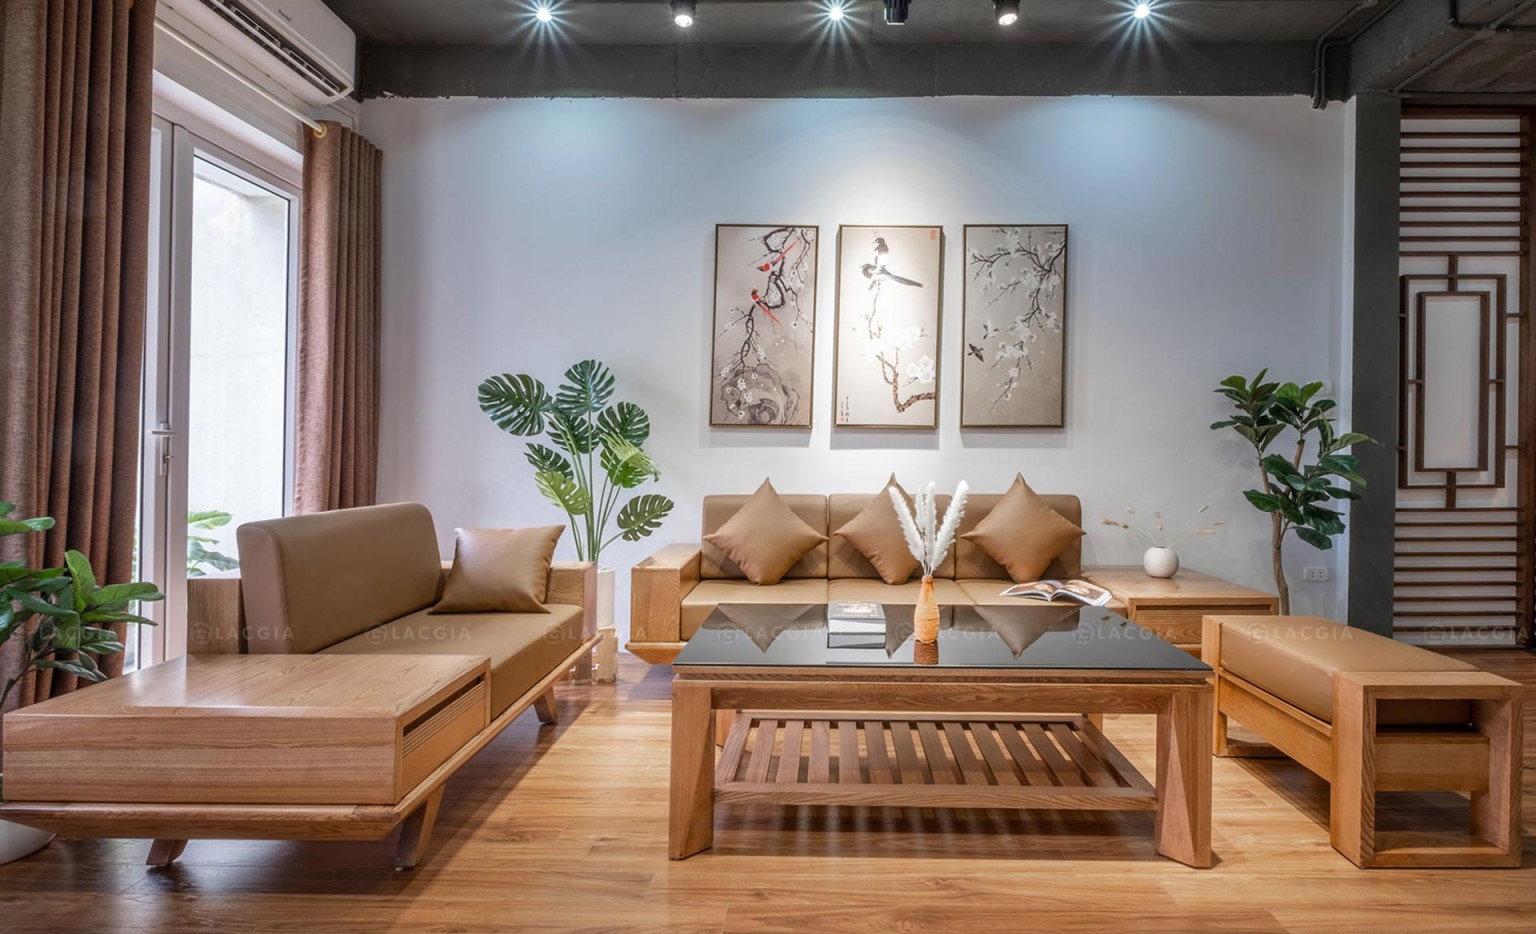 Tổng hợp mẫu thiết kế nội thất phòng khách gỗ tự nhiên hiện đại, sang trọng